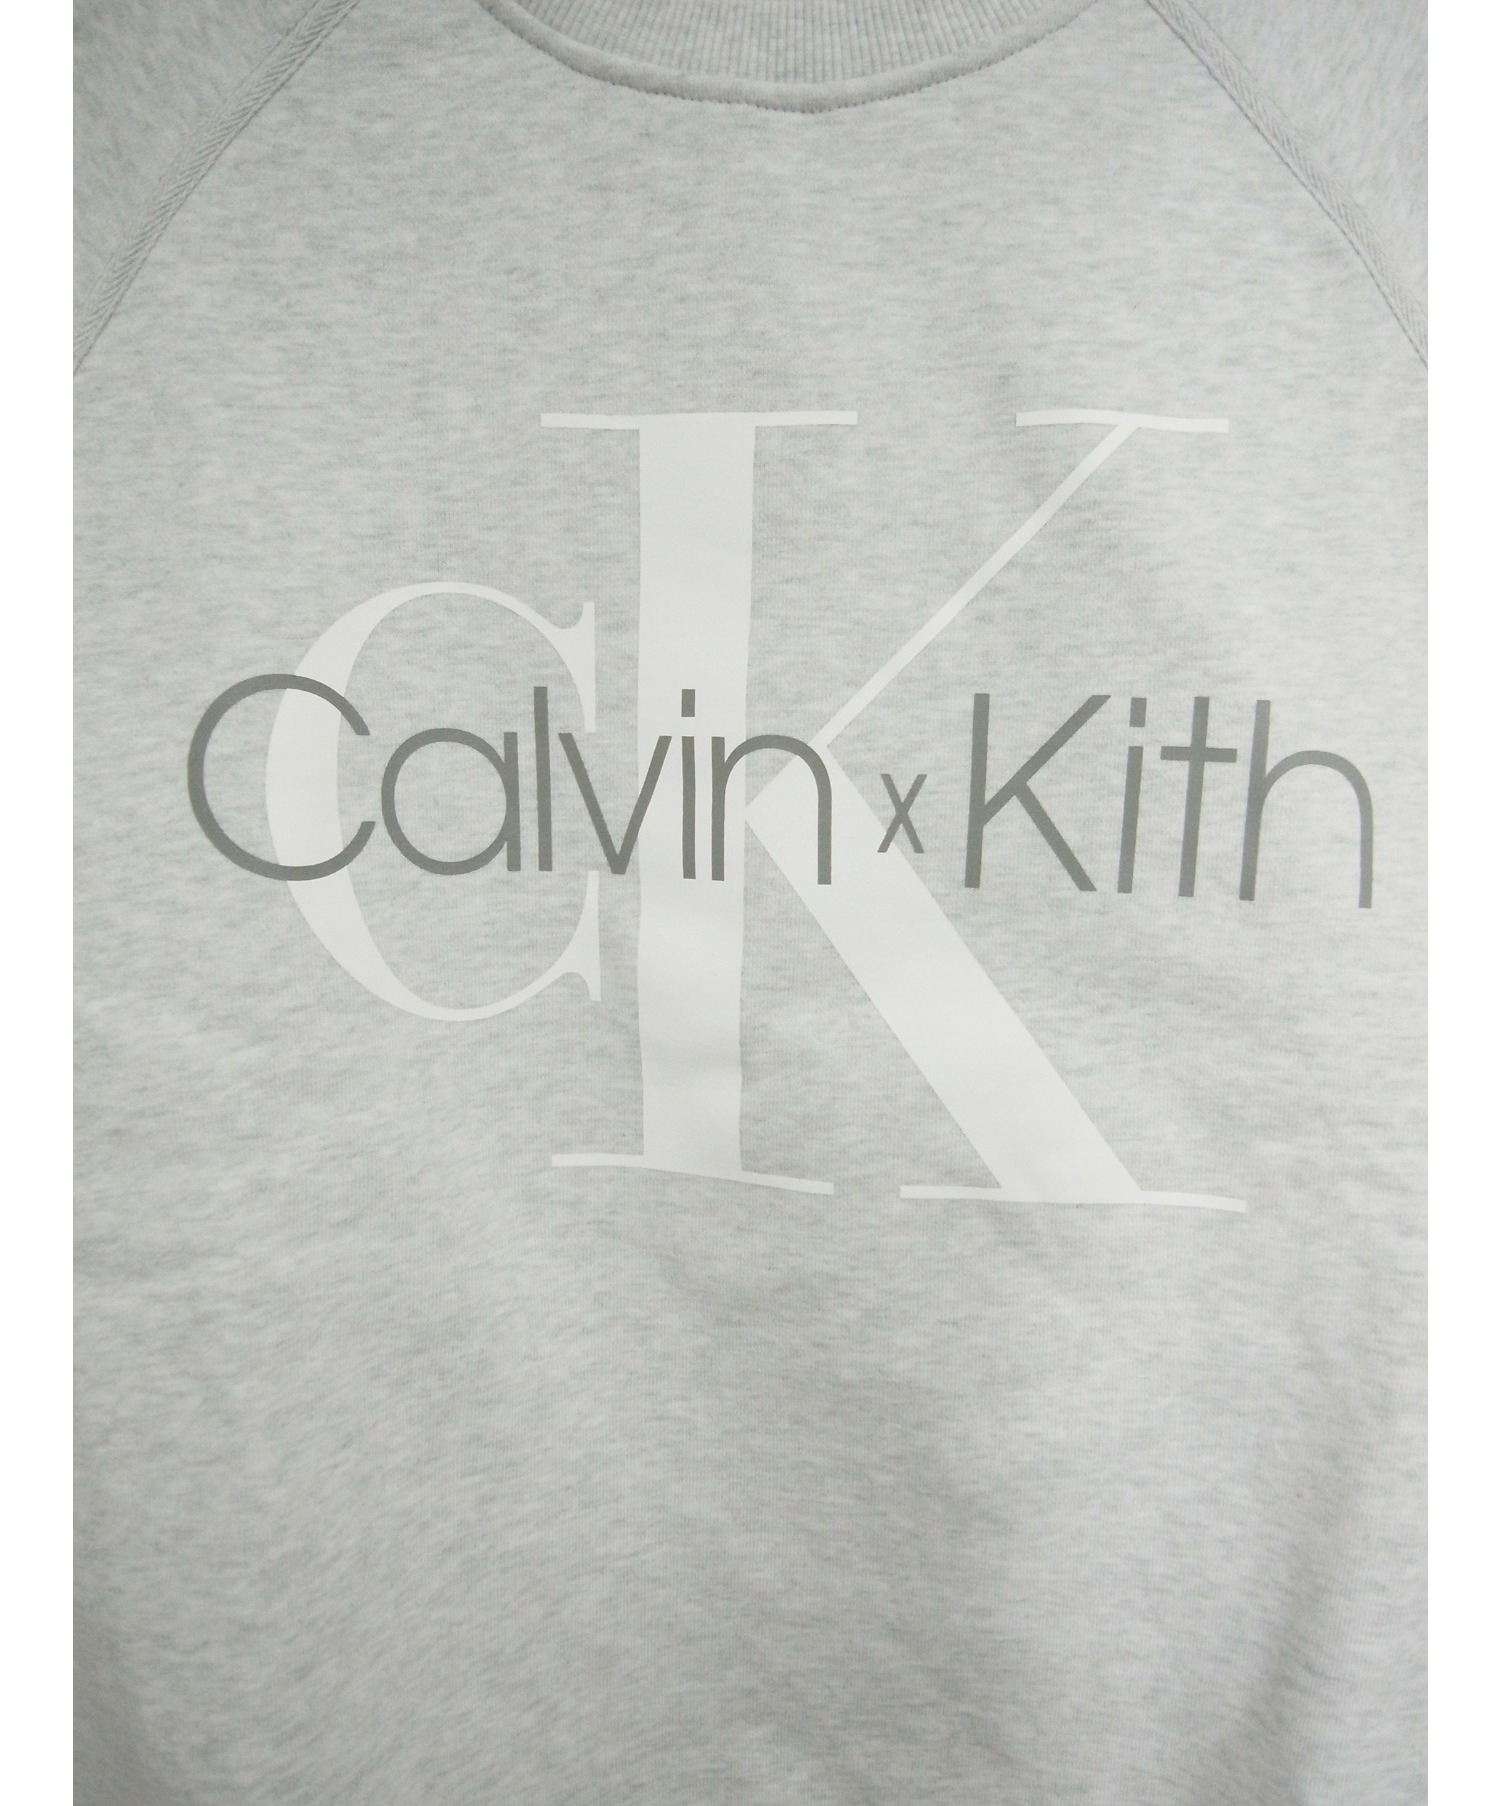 KITH×CALVIN KLEIN (キス×カルバンクライン) プリントスウェット グレー サイズ:L